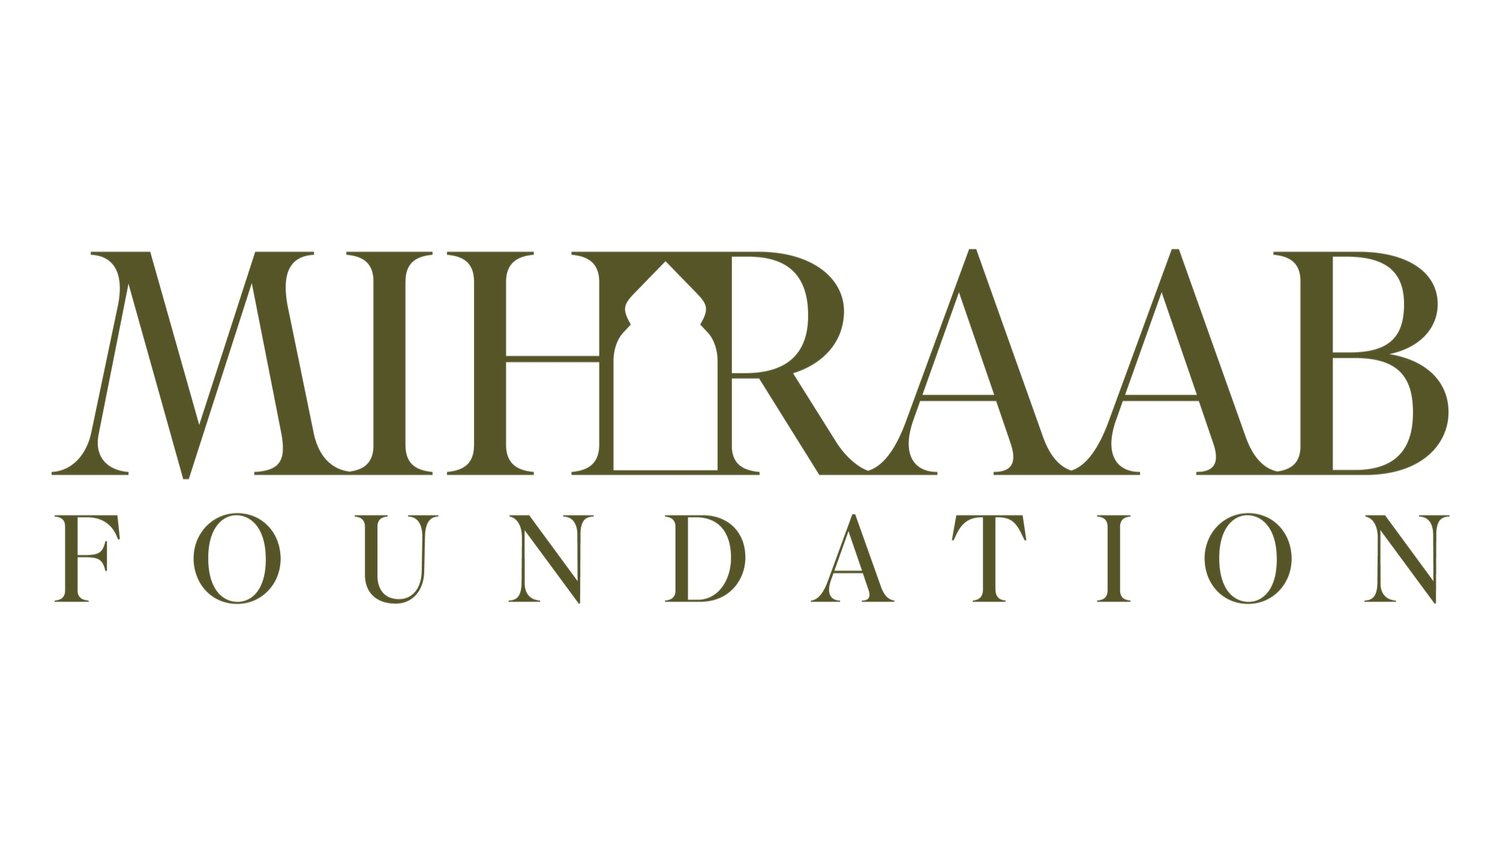 Mihraab Foundation